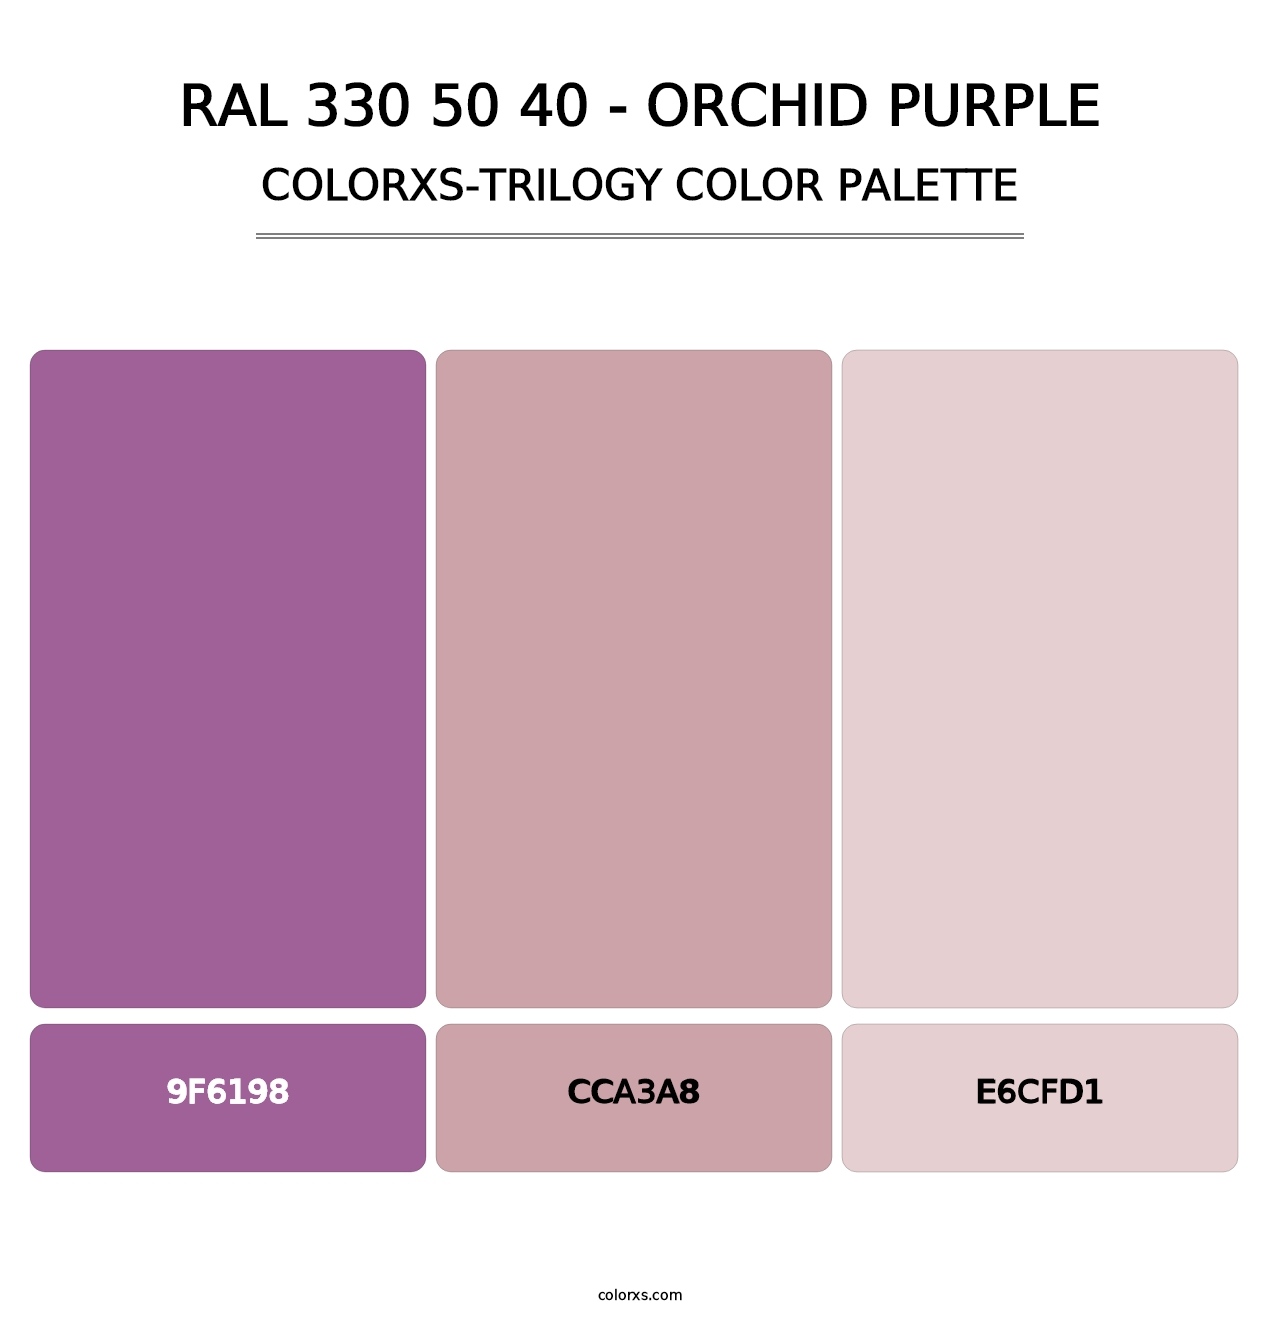 RAL 330 50 40 - Orchid Purple - Colorxs Trilogy Palette